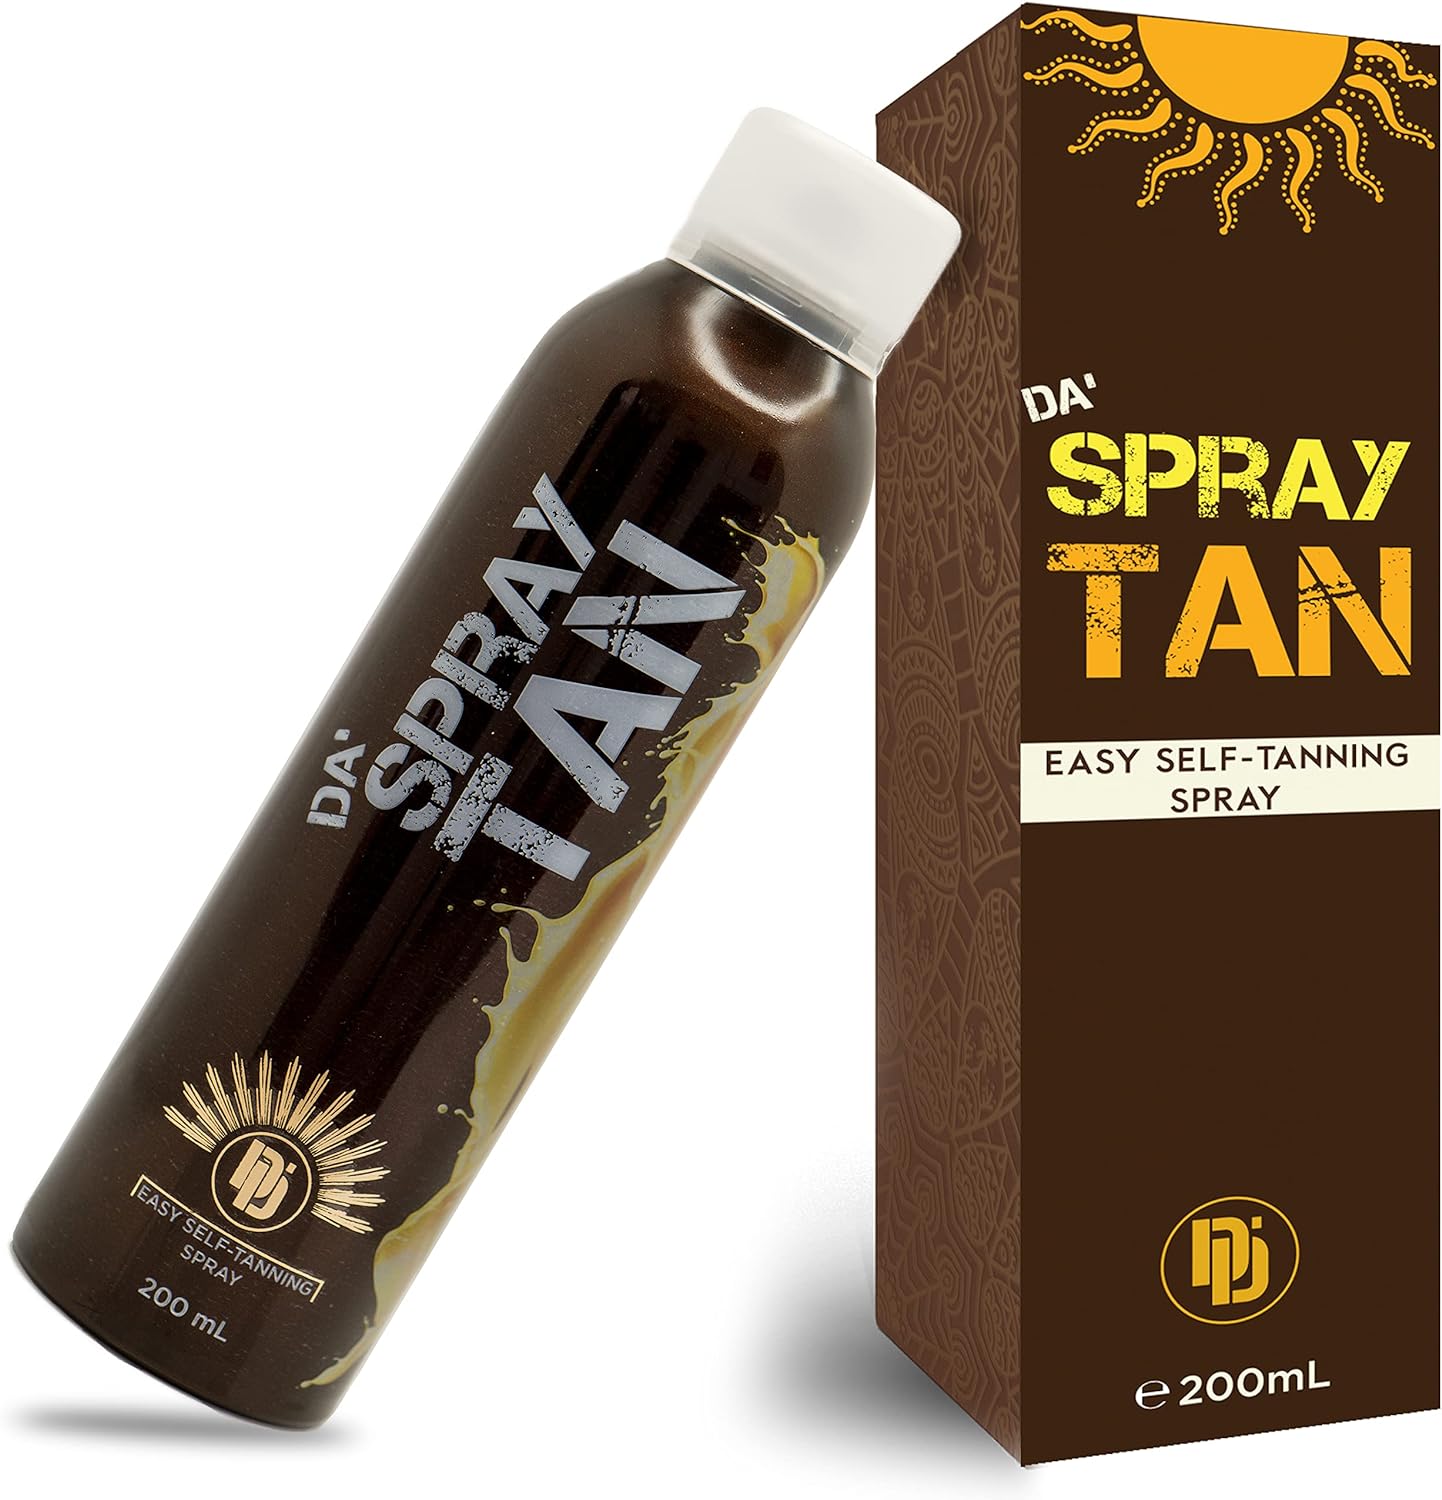 Da Spray Tan